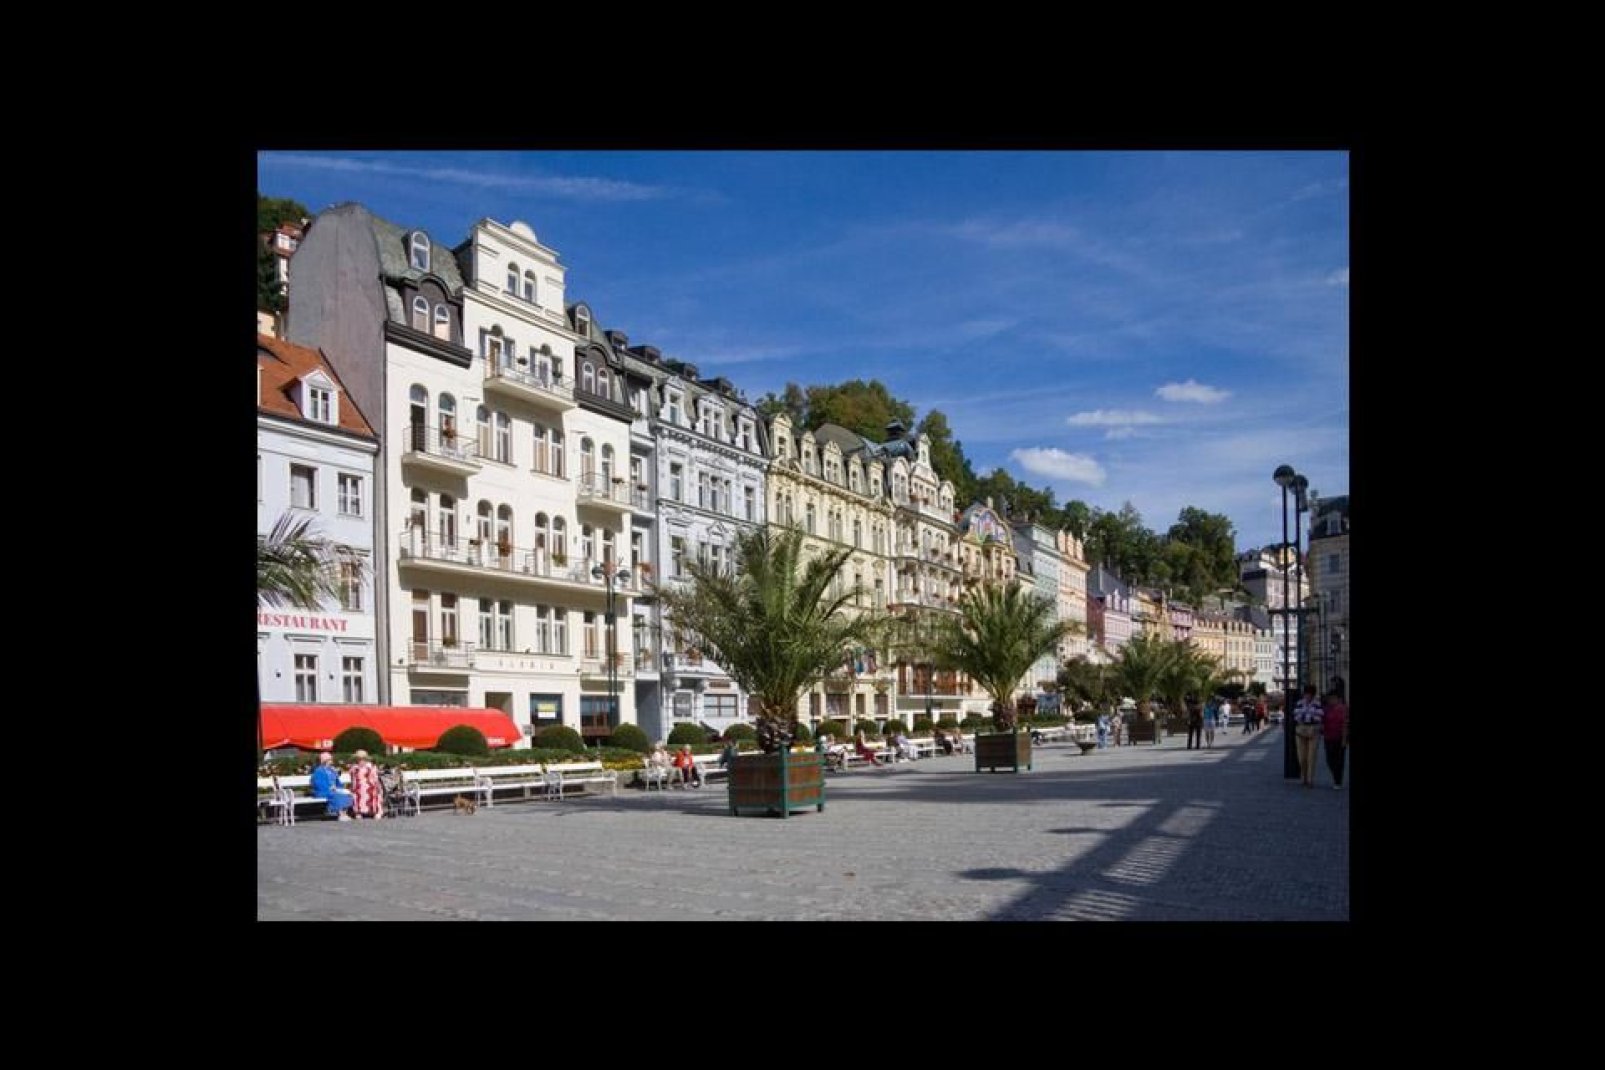 Una plaza de Karlovy Vary, o Karlsbad, que significa «El spa de Carlos», ya que la ciudad se construyó cerca de una fuente de agua mineral.